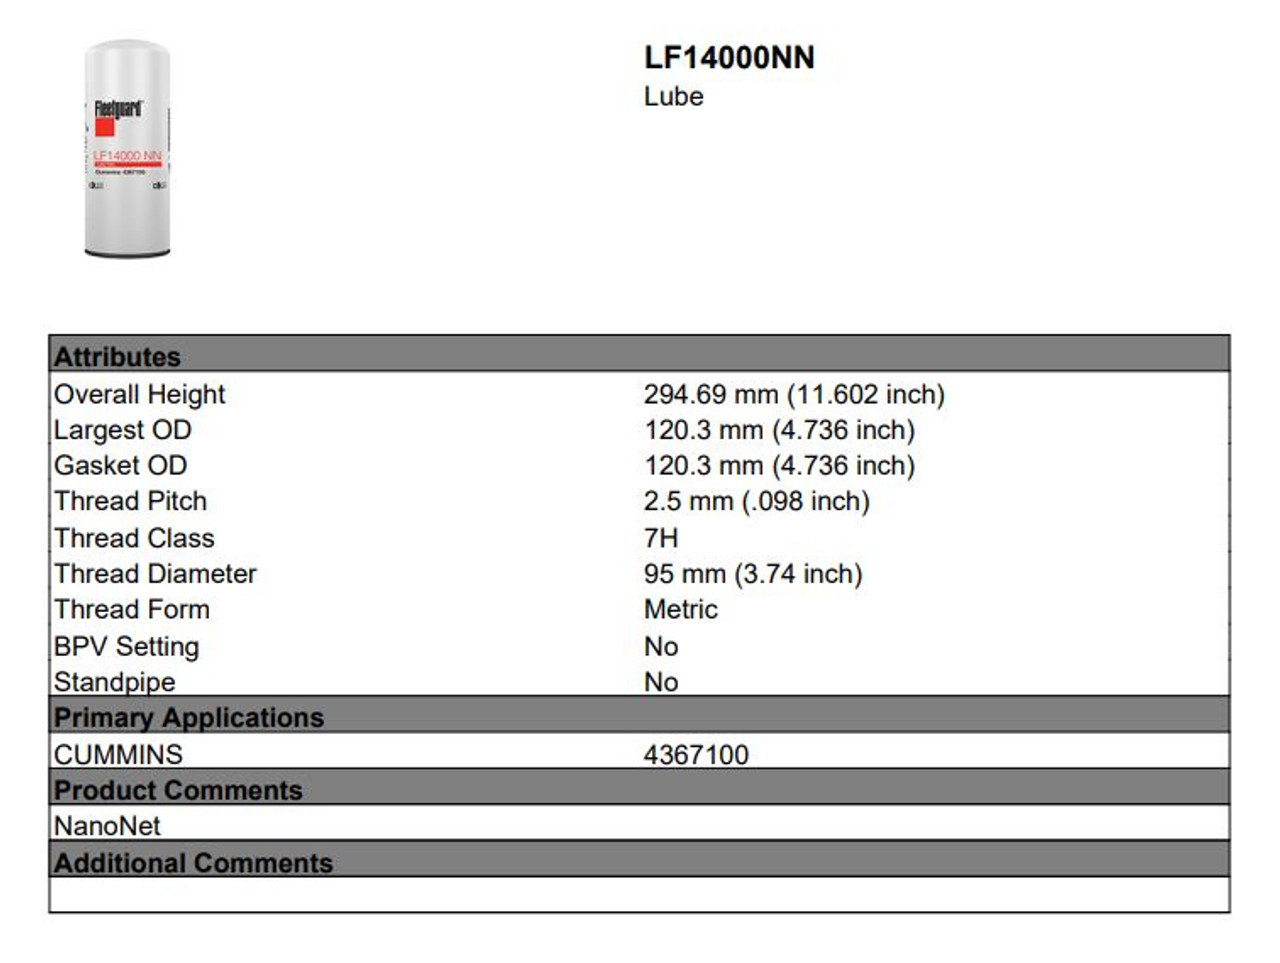 LF14000NN oil filter ISX ISX15 specs